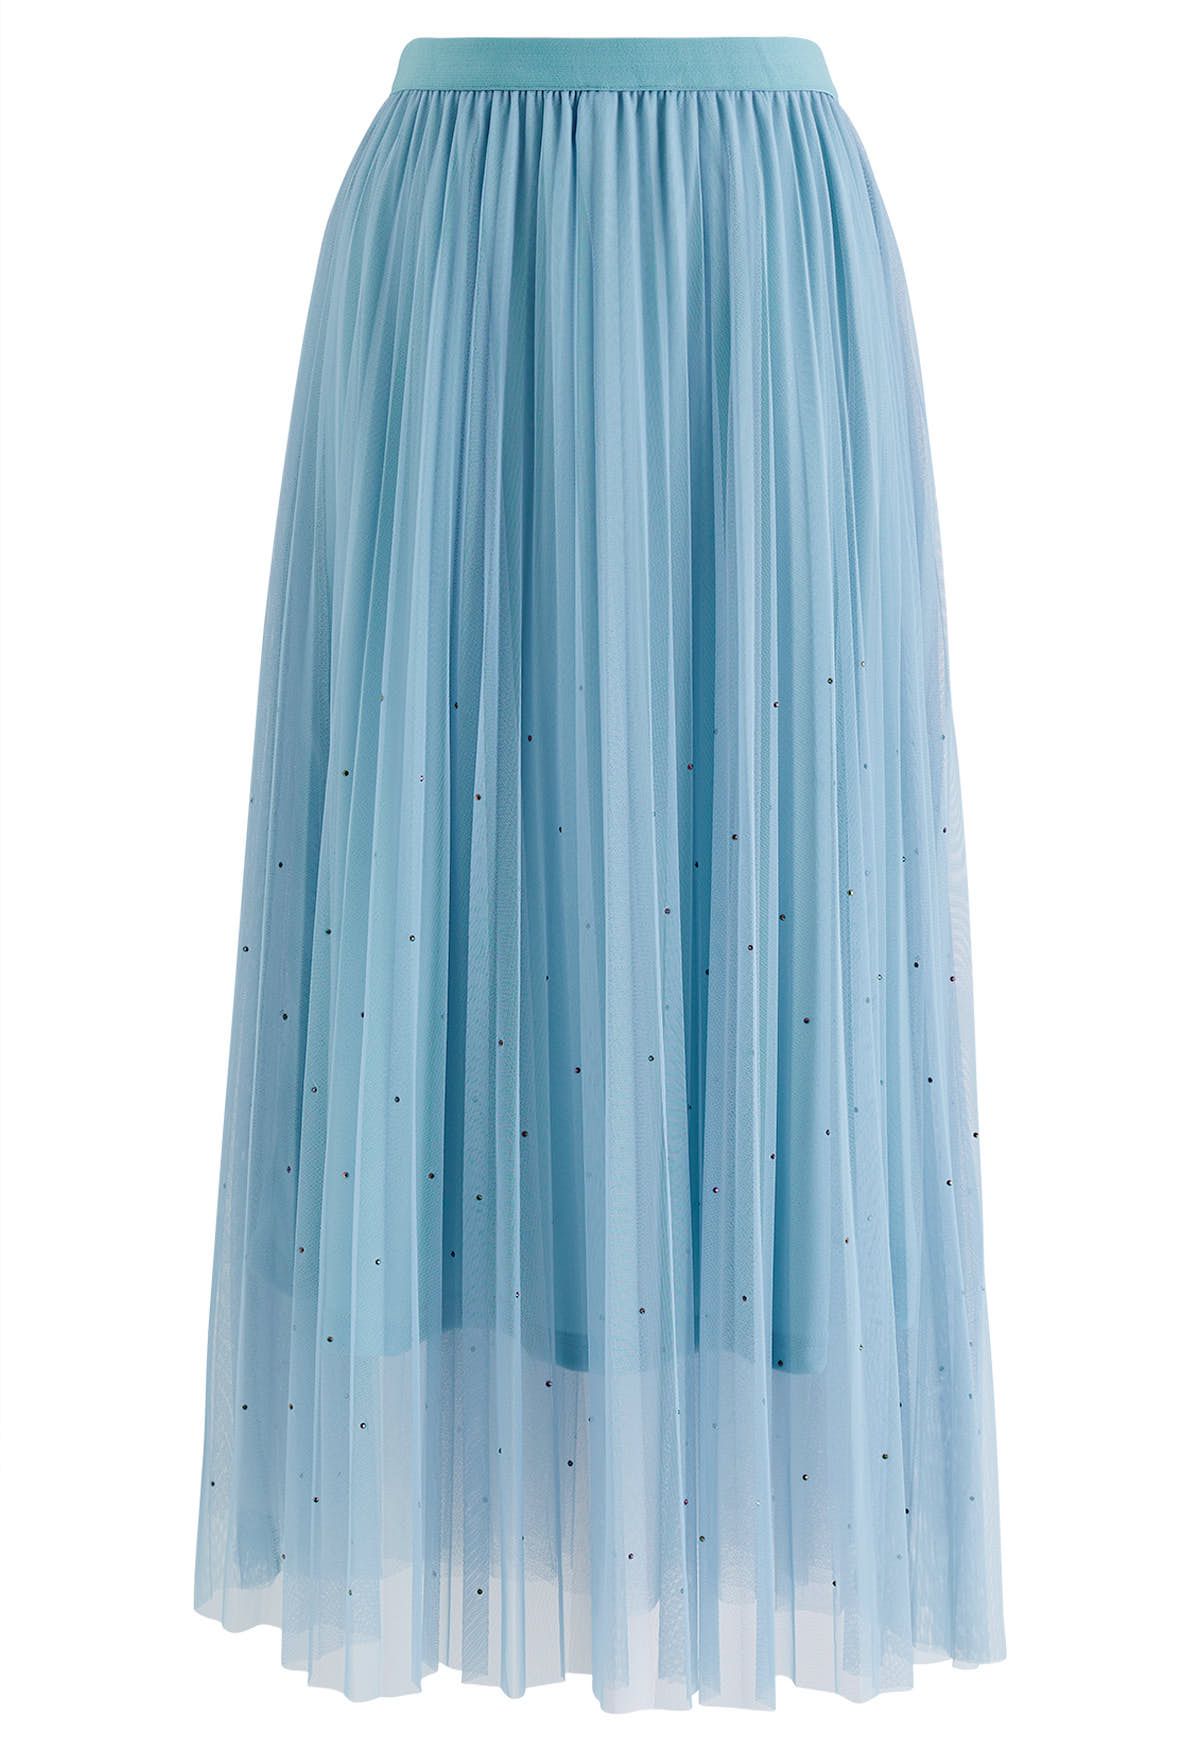 Glitter Embellished Pleated Mesh Tulle Skirt in Light Blue - Retro ...